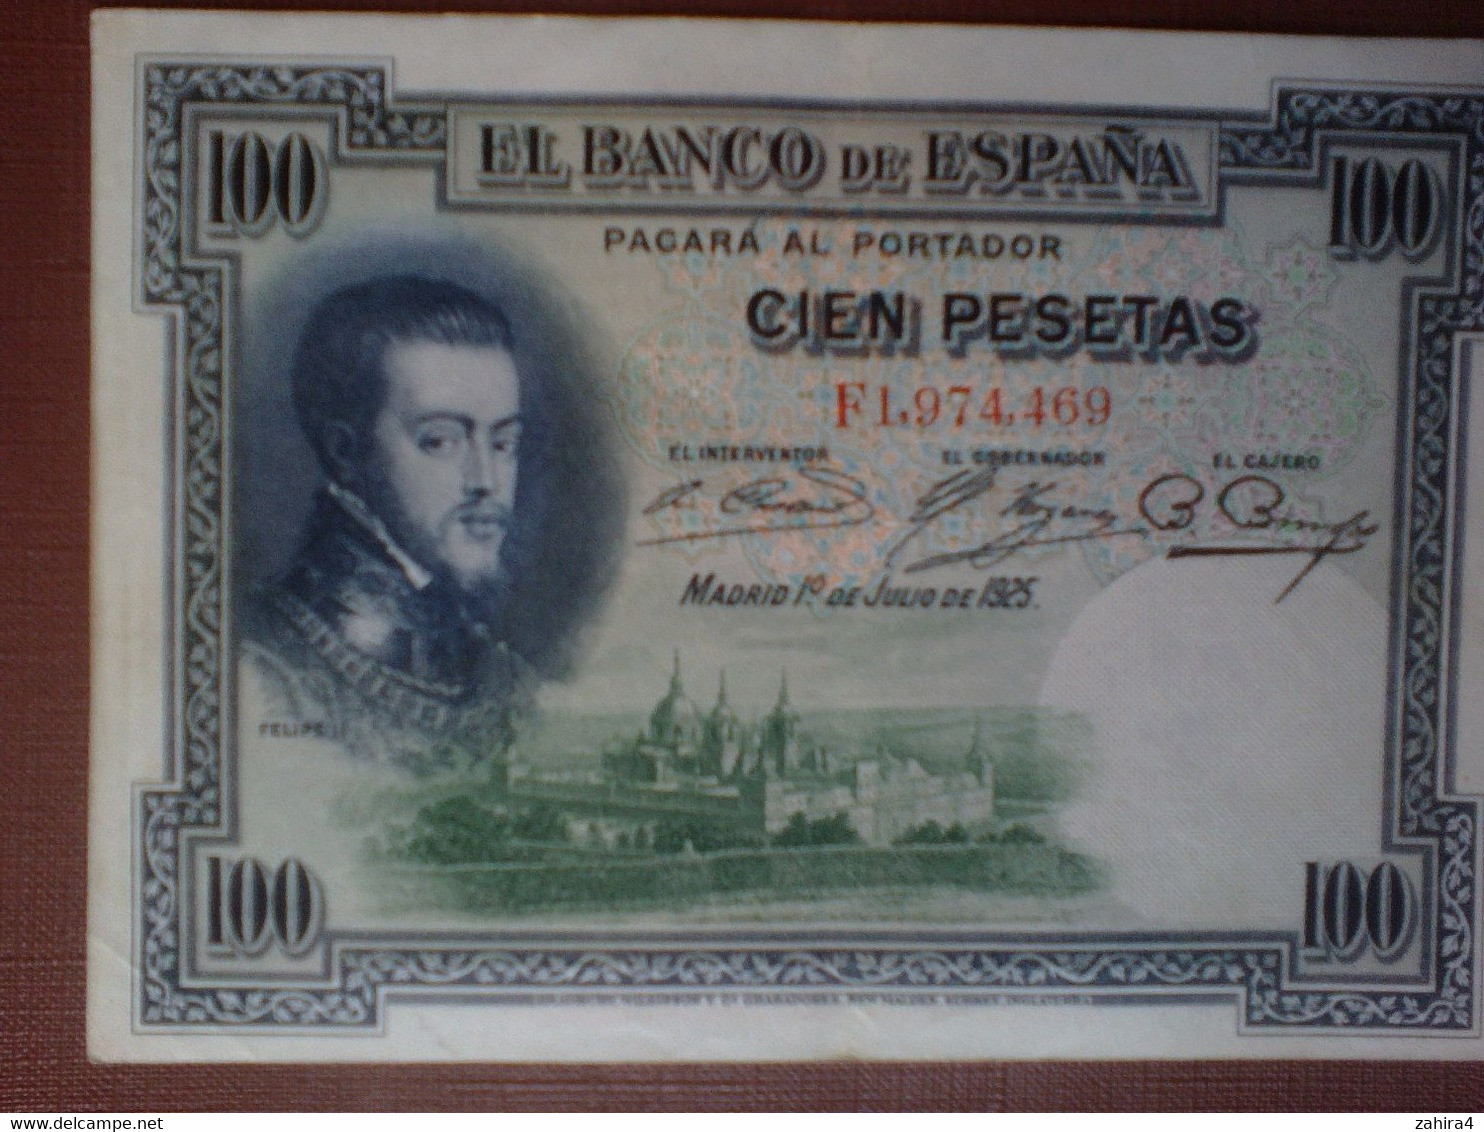 100 Pesetas - El Banco De Espana - F1,974,469 - Madrid 1° De Julio De 1925 - Felipe II - Cien Pesetas - 100 Pesetas